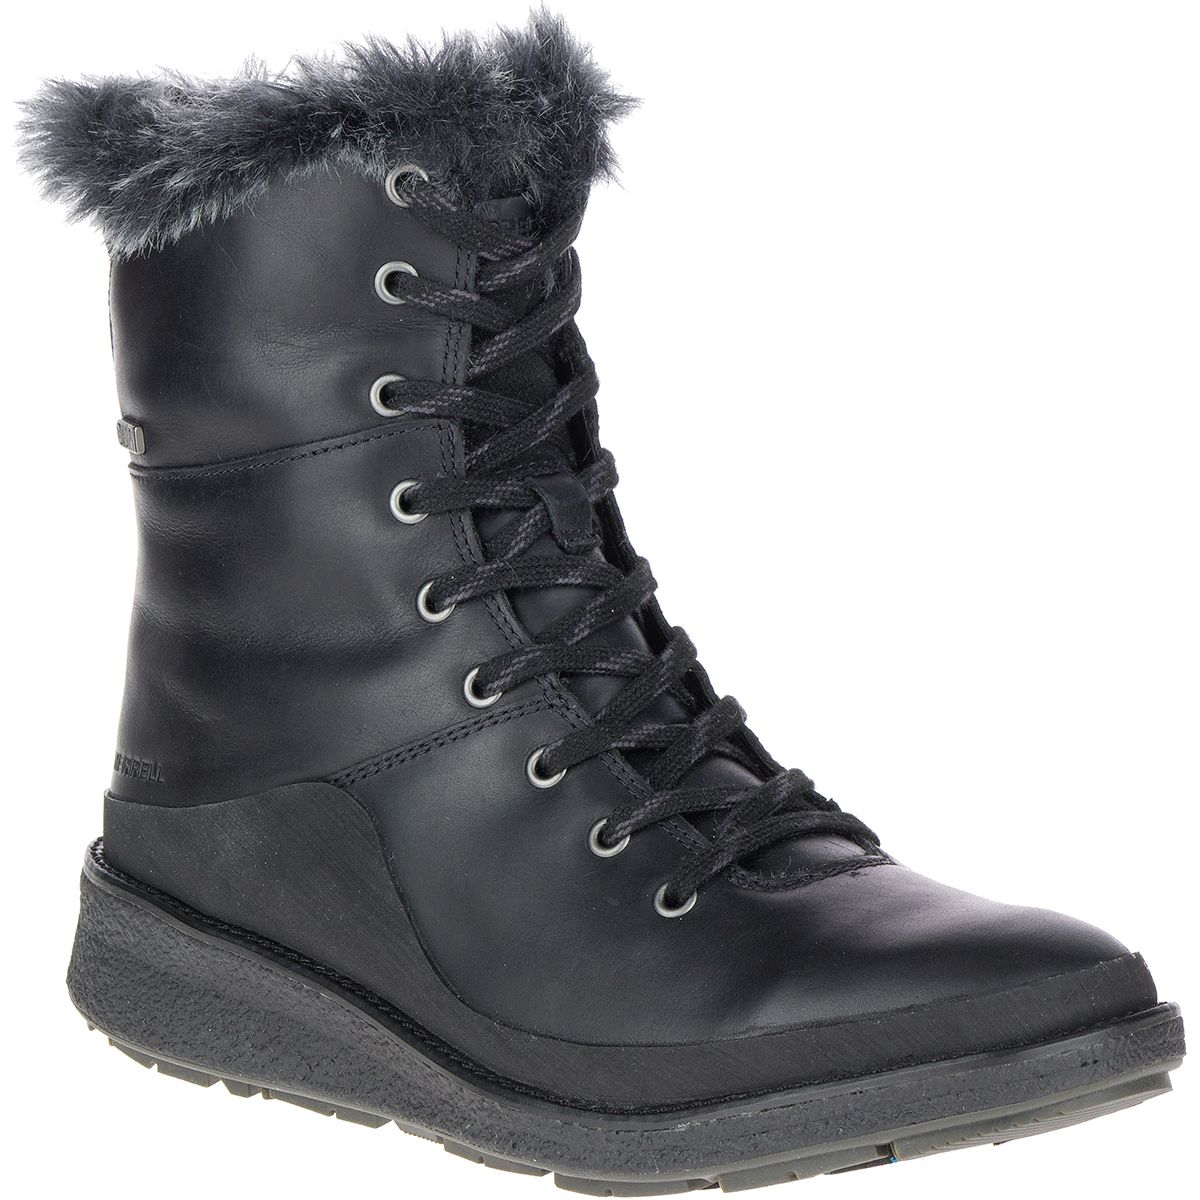 Merrell Tremblant Ezra Lace Waterproof Ice+ Boot - Women's - Footwear